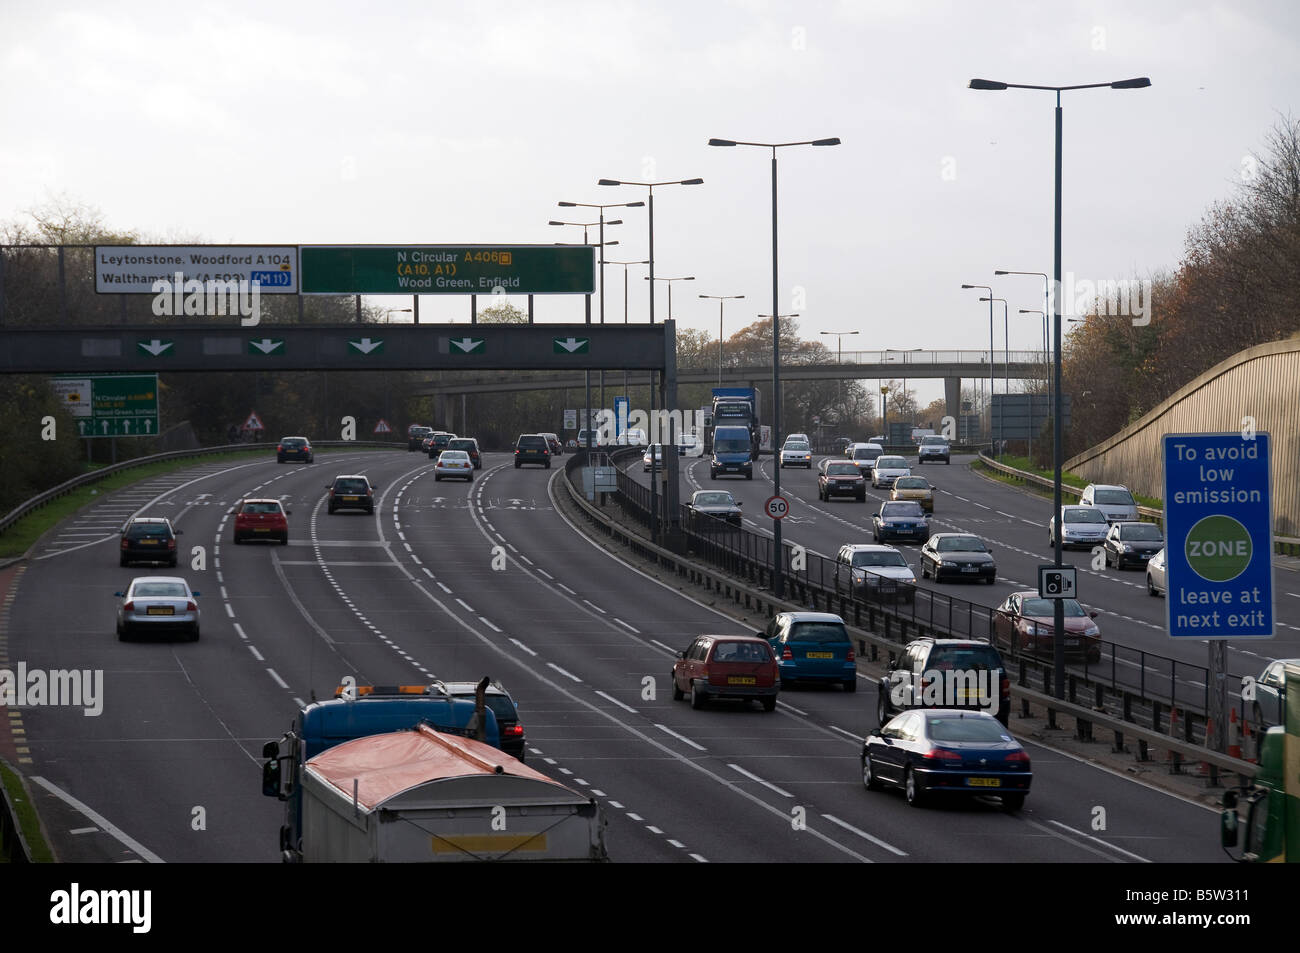 Norden kreisförmige A406 London South Woodford Verkehr beschäftigt Autos Lastwagen LKW Transporter Straßenschild leuchtet Gassen Autobahn Ringroad Stockfoto